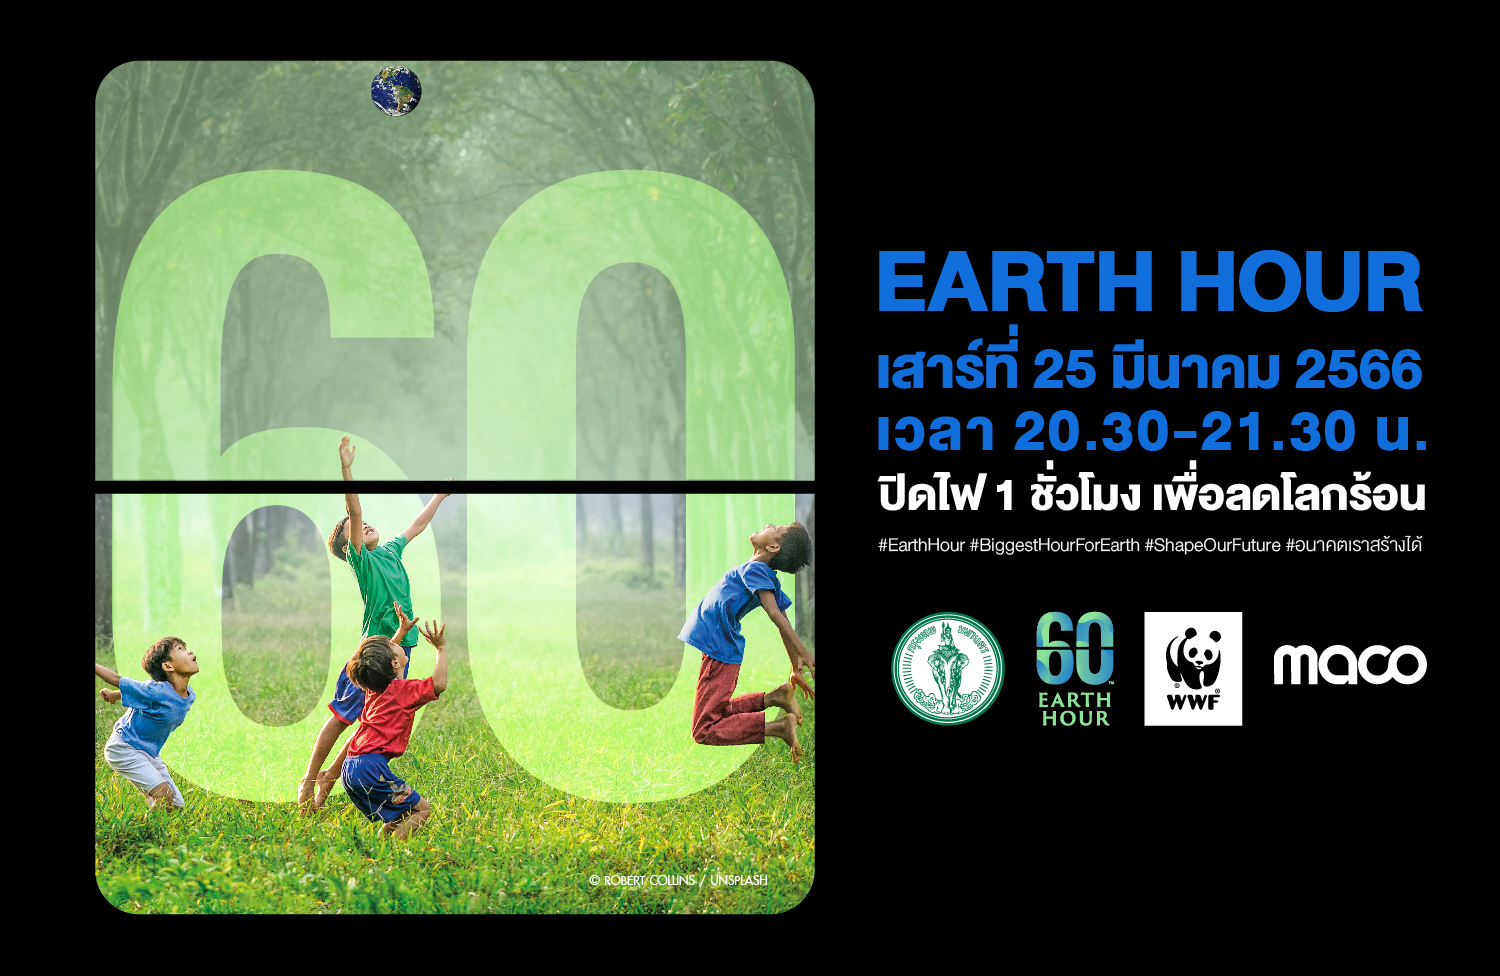 MACO ร่วมสนับสนุนกิจกรรมรวมพลังเพื่อลดโลกร้อน “ปิดไฟ 1 ชั่วโมง เพื่อลดโลกร้อน” (60+ Earth Hour 2023) 